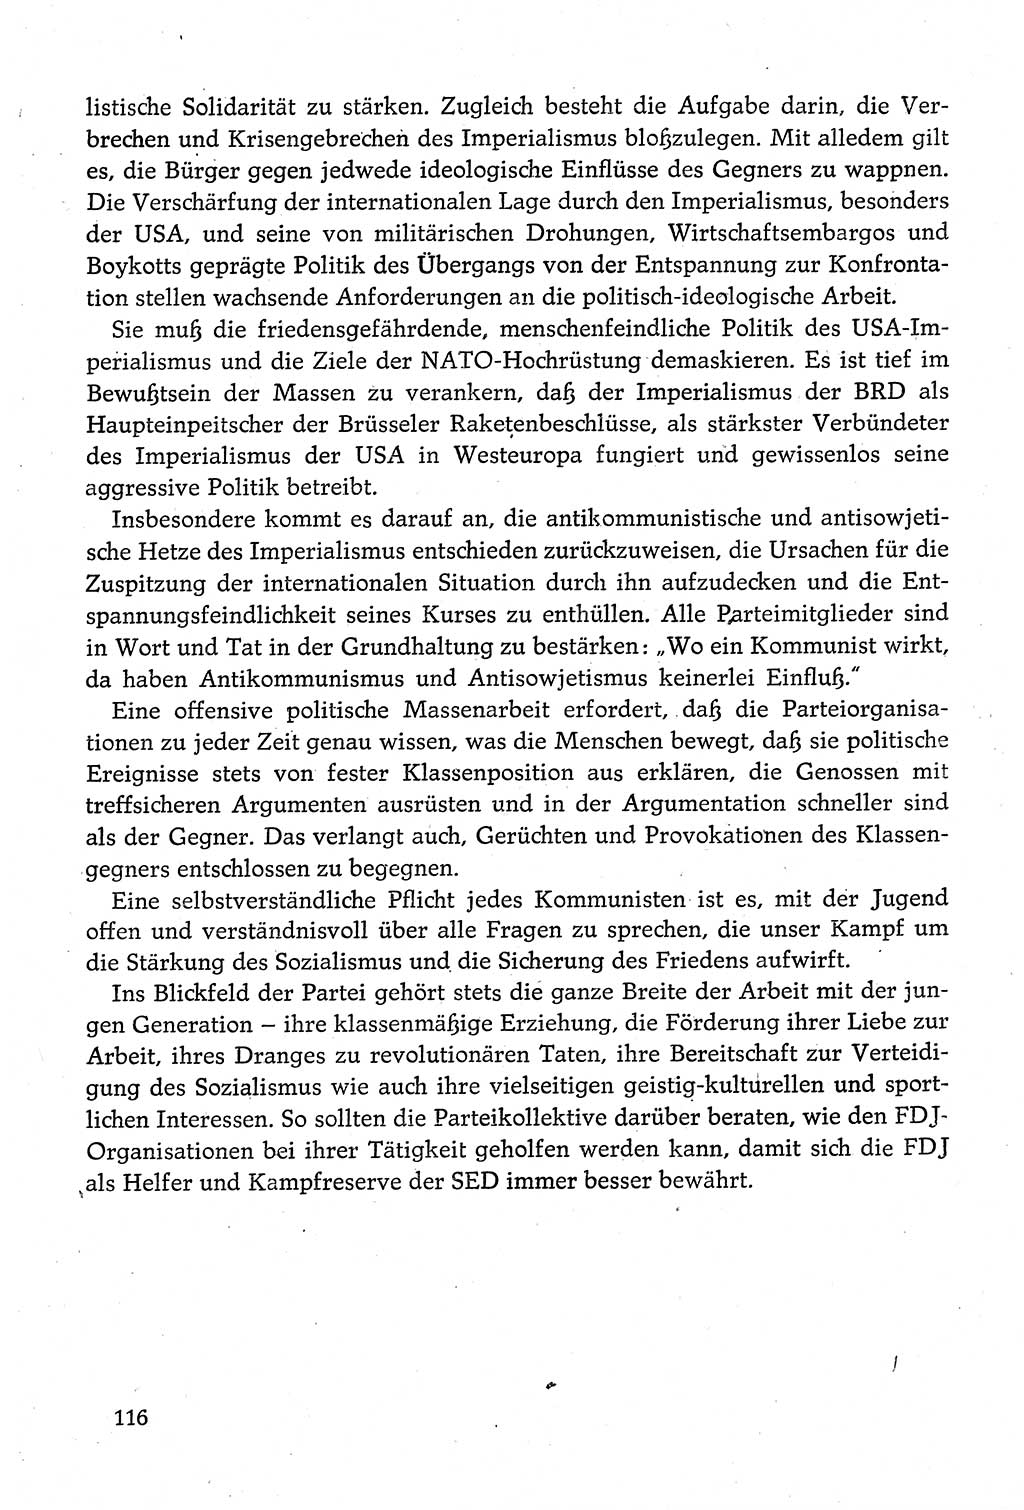 Dokumente der Sozialistischen Einheitspartei Deutschlands (SED) [Deutsche Demokratische Republik (DDR)] 1980-1981, Seite 116 (Dok. SED DDR 1980-1981, S. 116)